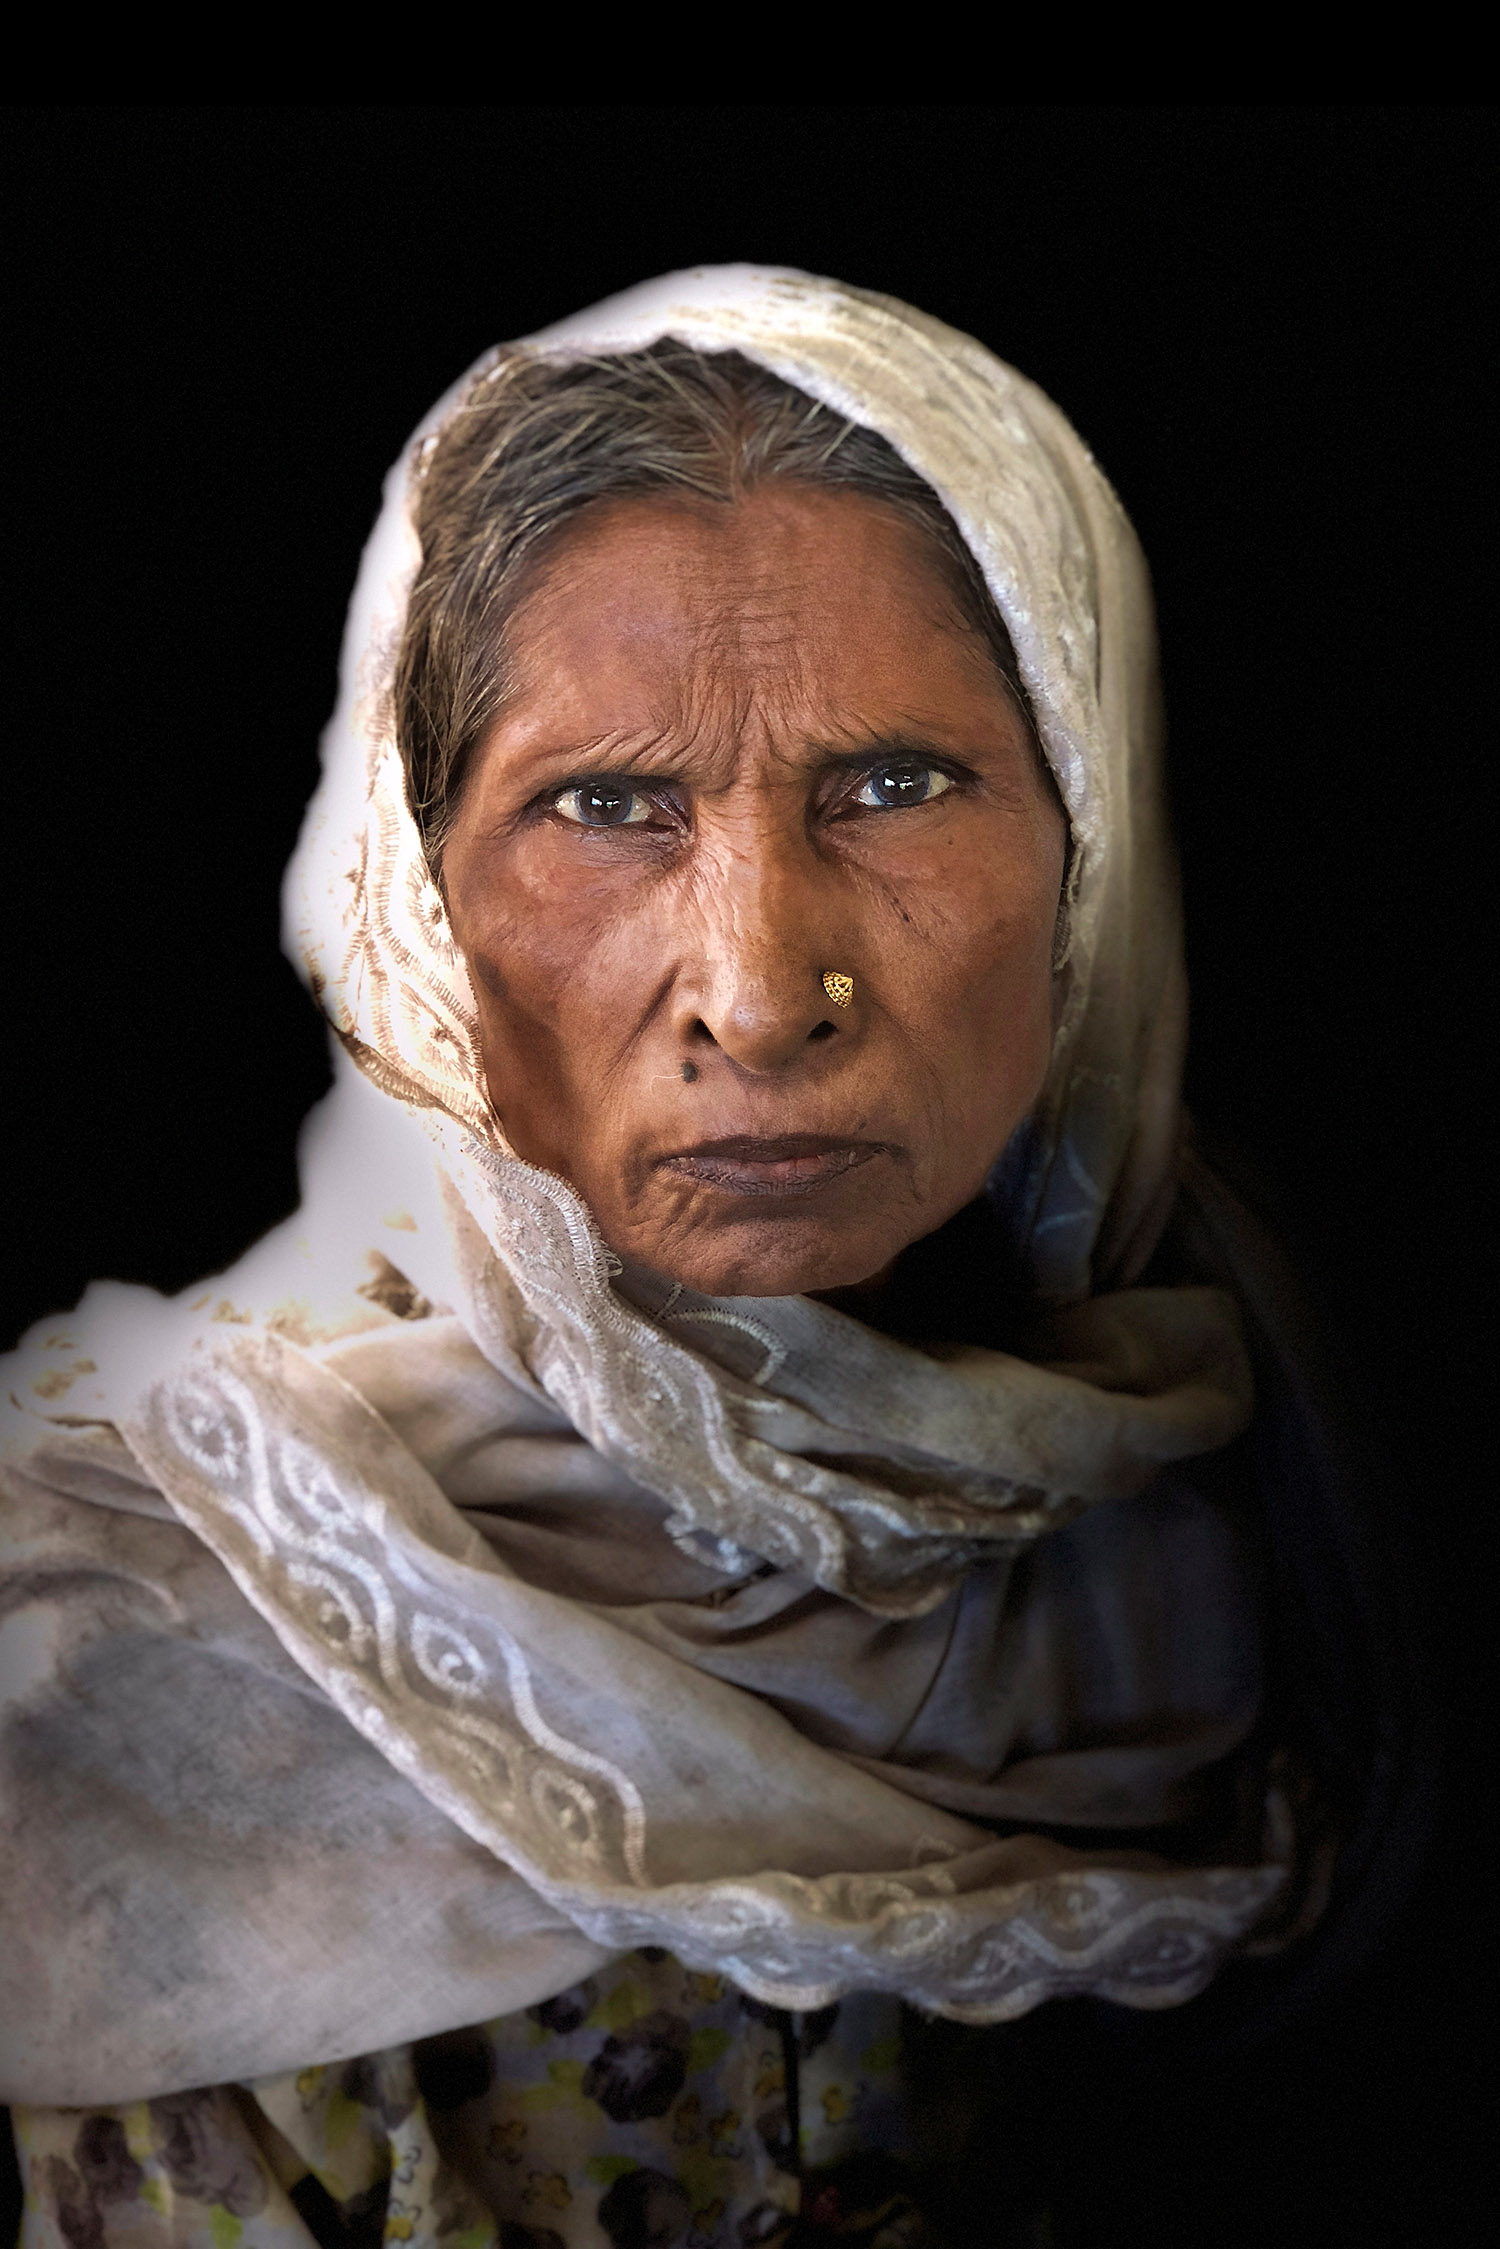 Portrait de femme au Bangladesh